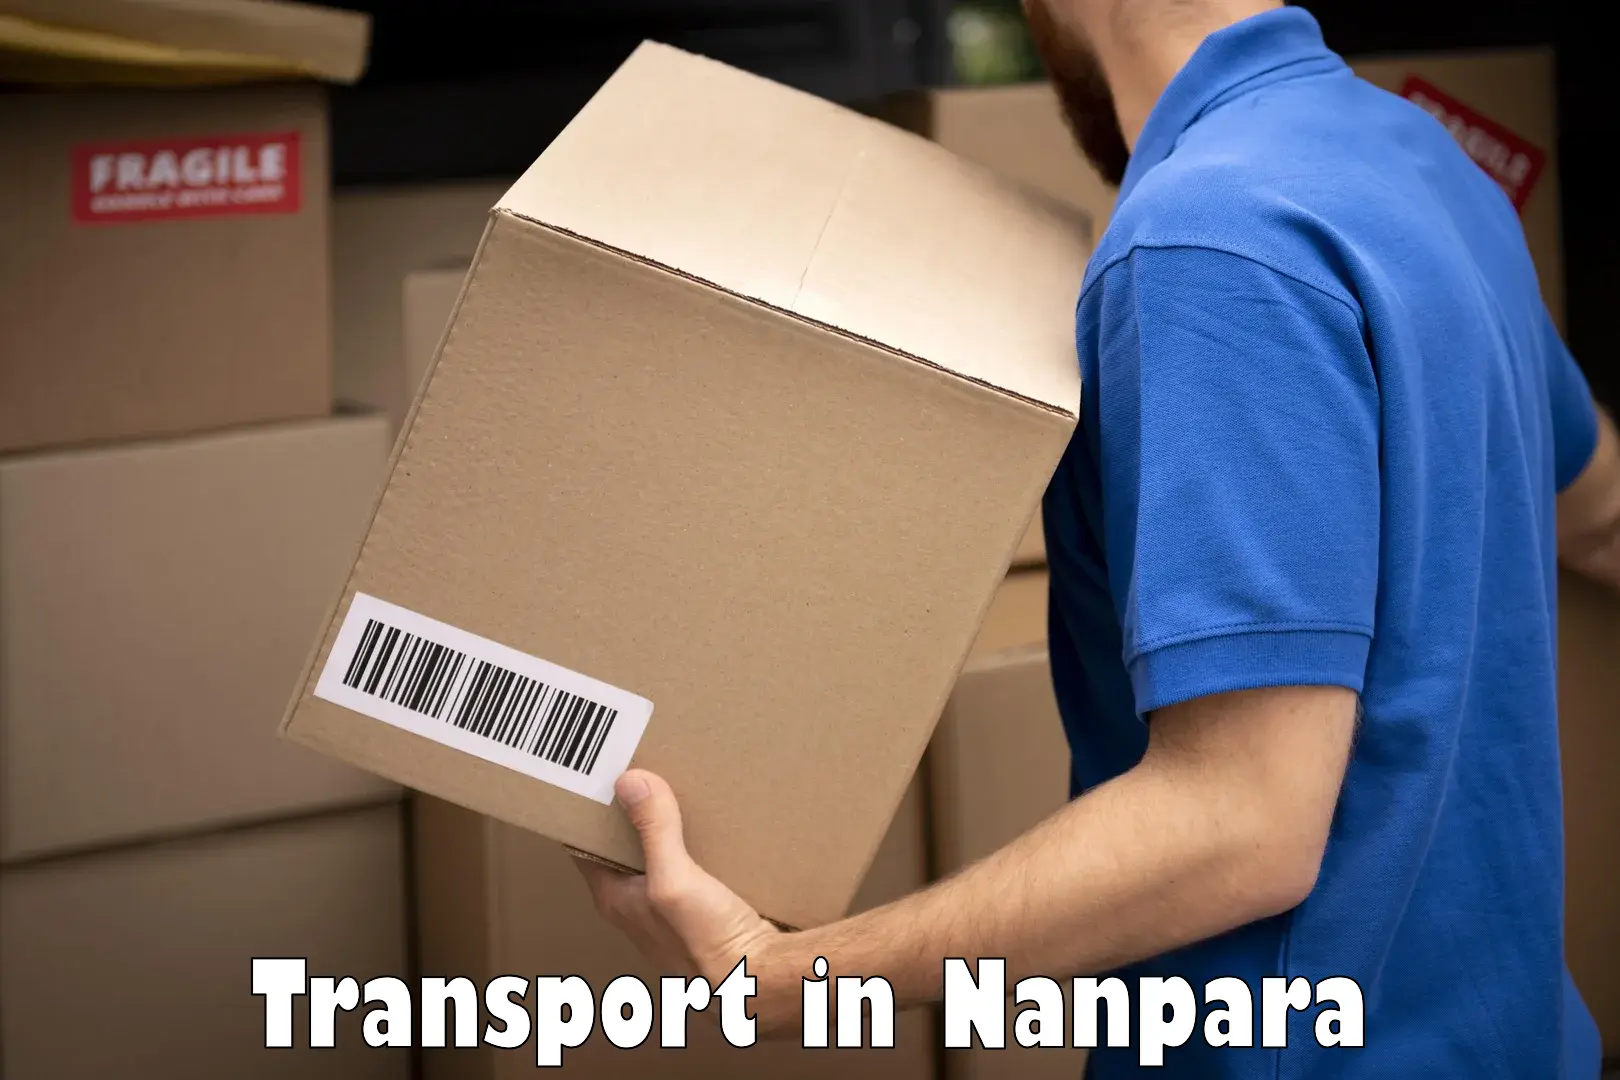 Nearest transport service in Nanpara